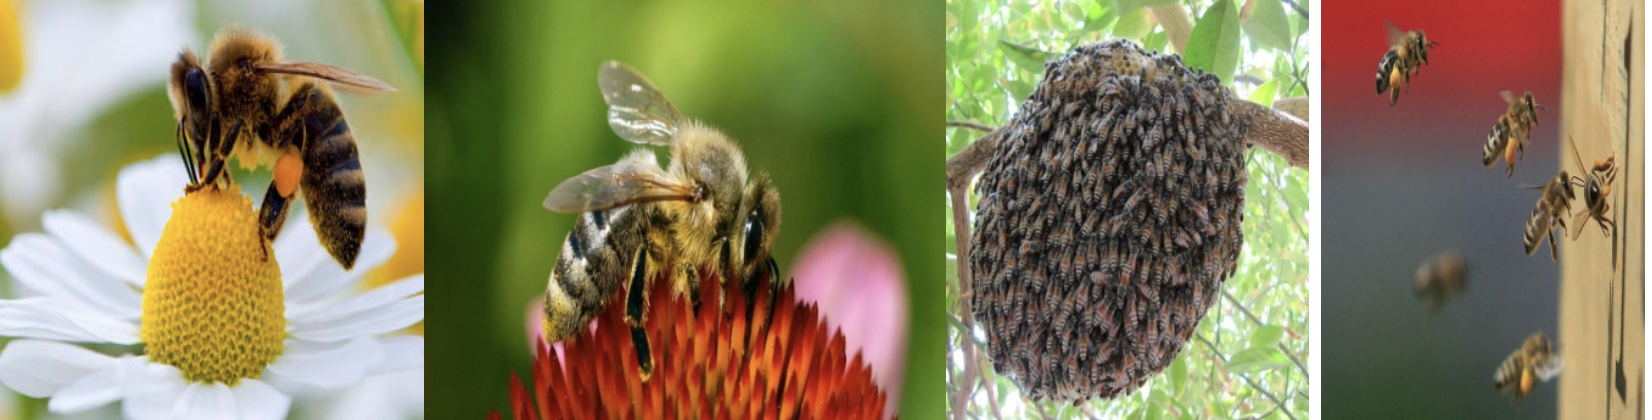 pomlad2017 - Pomladno prebujenje – sporočilo čebel in o sonaravni, trajnostni samooskrbni pridelavi na vrtovih in kmetijah – brez kemije, s celostno, agro-homeodinamično krepitvijo ravnovesja, vitalnosti in odpornosti rastlin – v vrtičkarski, kmetijski in vrtnarski pridelavi!